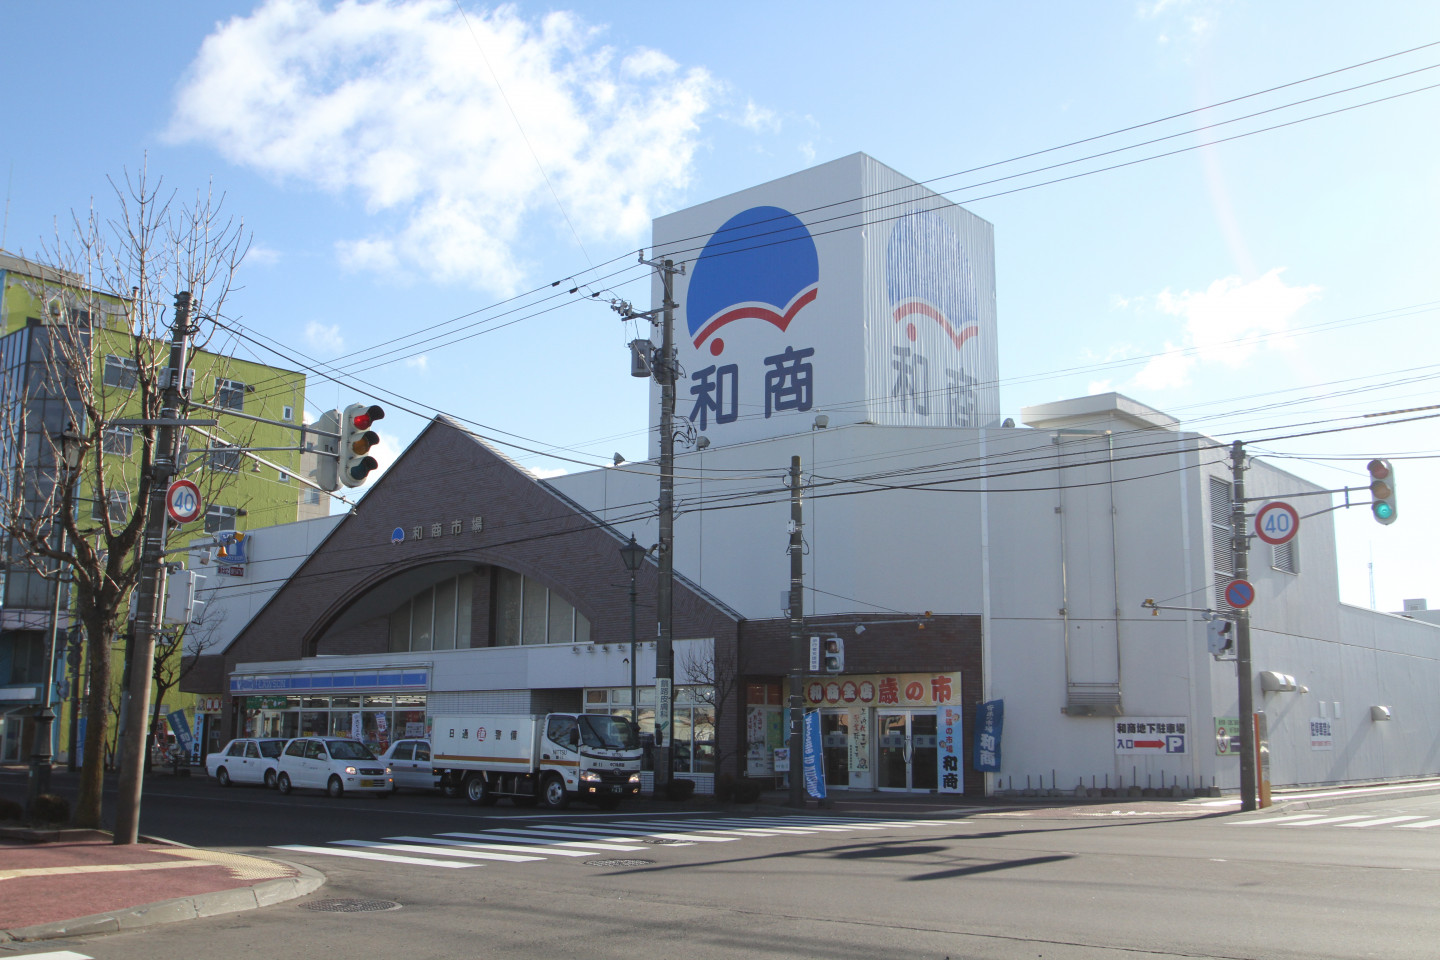 桜木紫乃原作の映画・ドラマロケ地は幣舞橋、和商市場、釧路駅など。